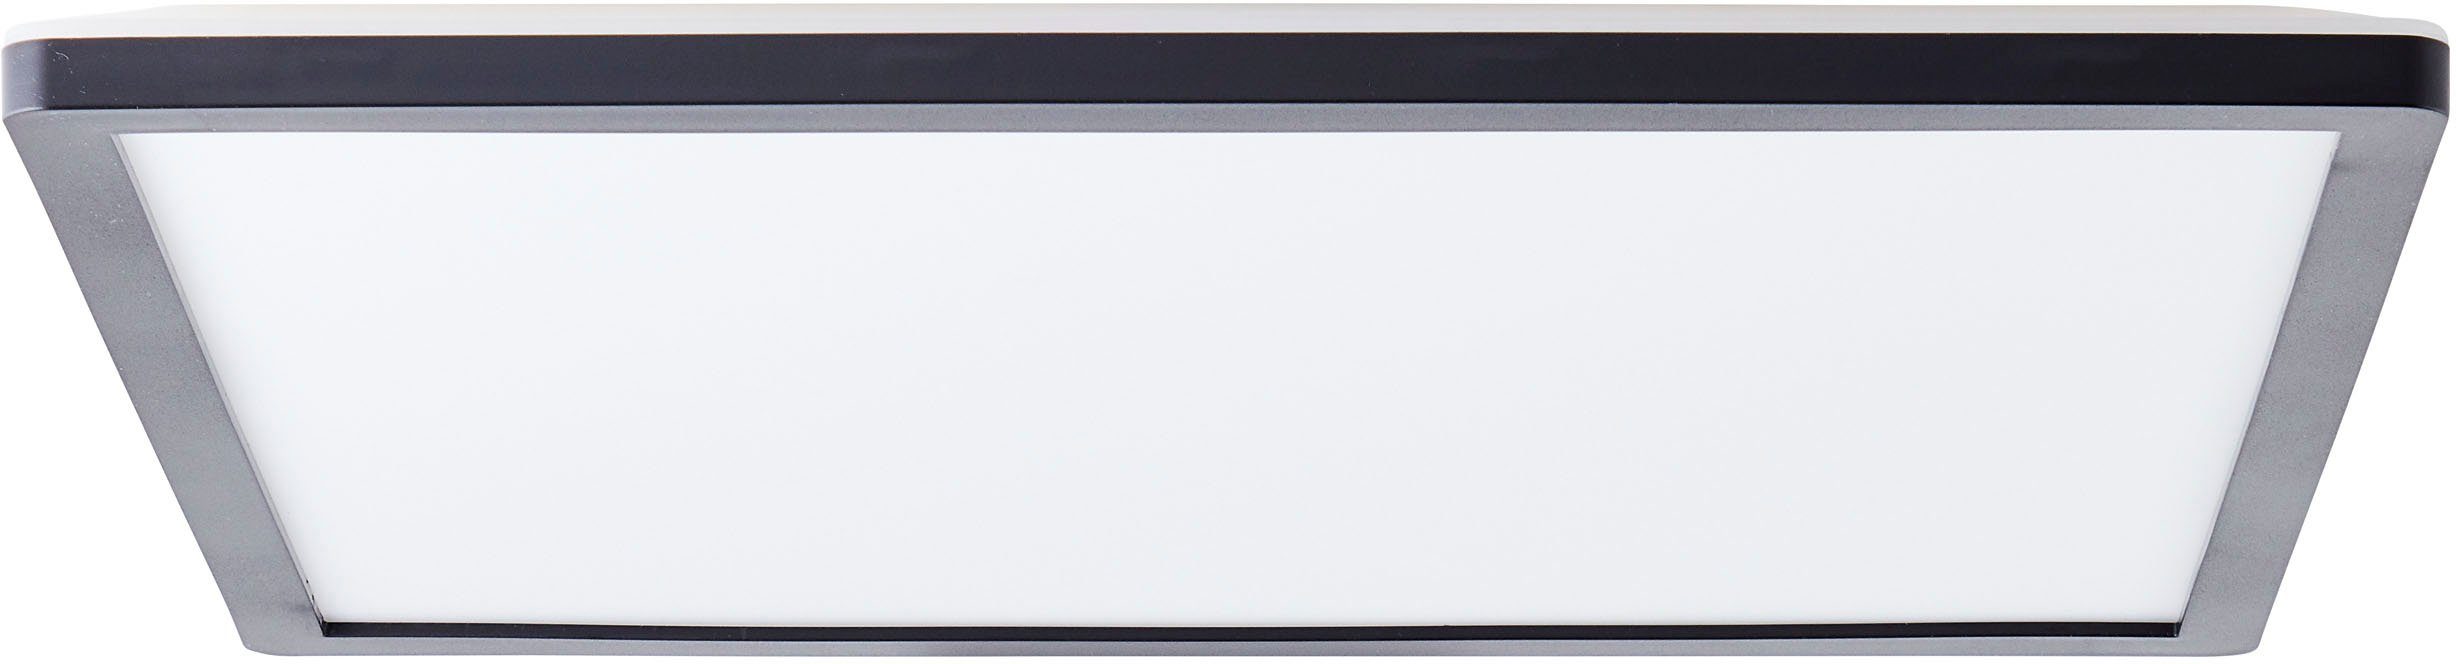 my home LED Deckenleuchte Evita, LED fest integriert, Neutralweiß, 42 x 42 cm, 3200 Lumen, 4000 Kelvin, schwarz/weiß